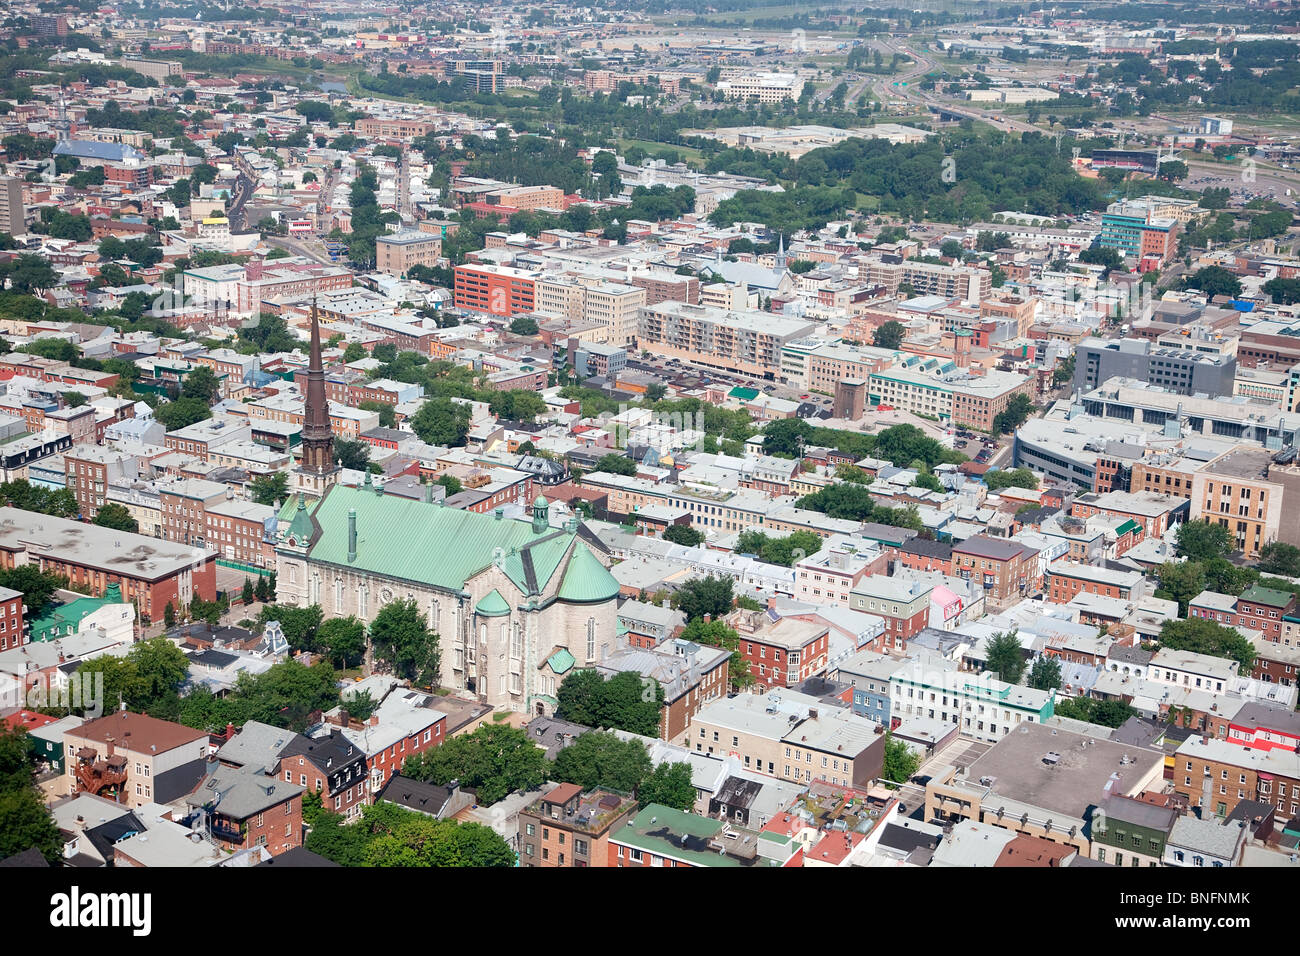 Dies ist eine erhöhte Ansicht von Quebec City, Provinz Quebec, Kanada. Die Kirche Saint-Jean-Baptiste ersichtlich. Stockfoto